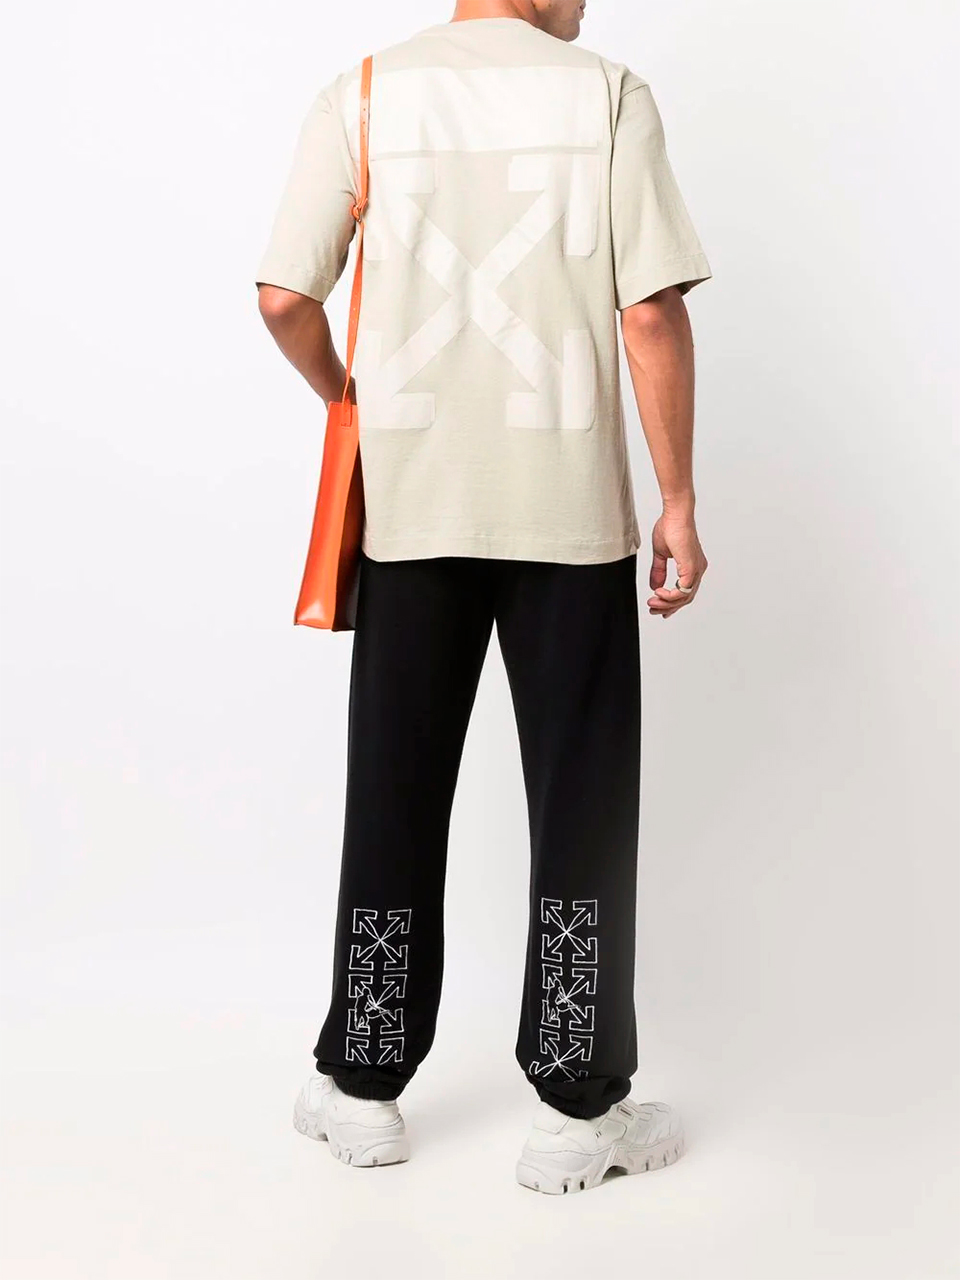 Imagem de: Camiseta Off-White Bege com Estampa Setas